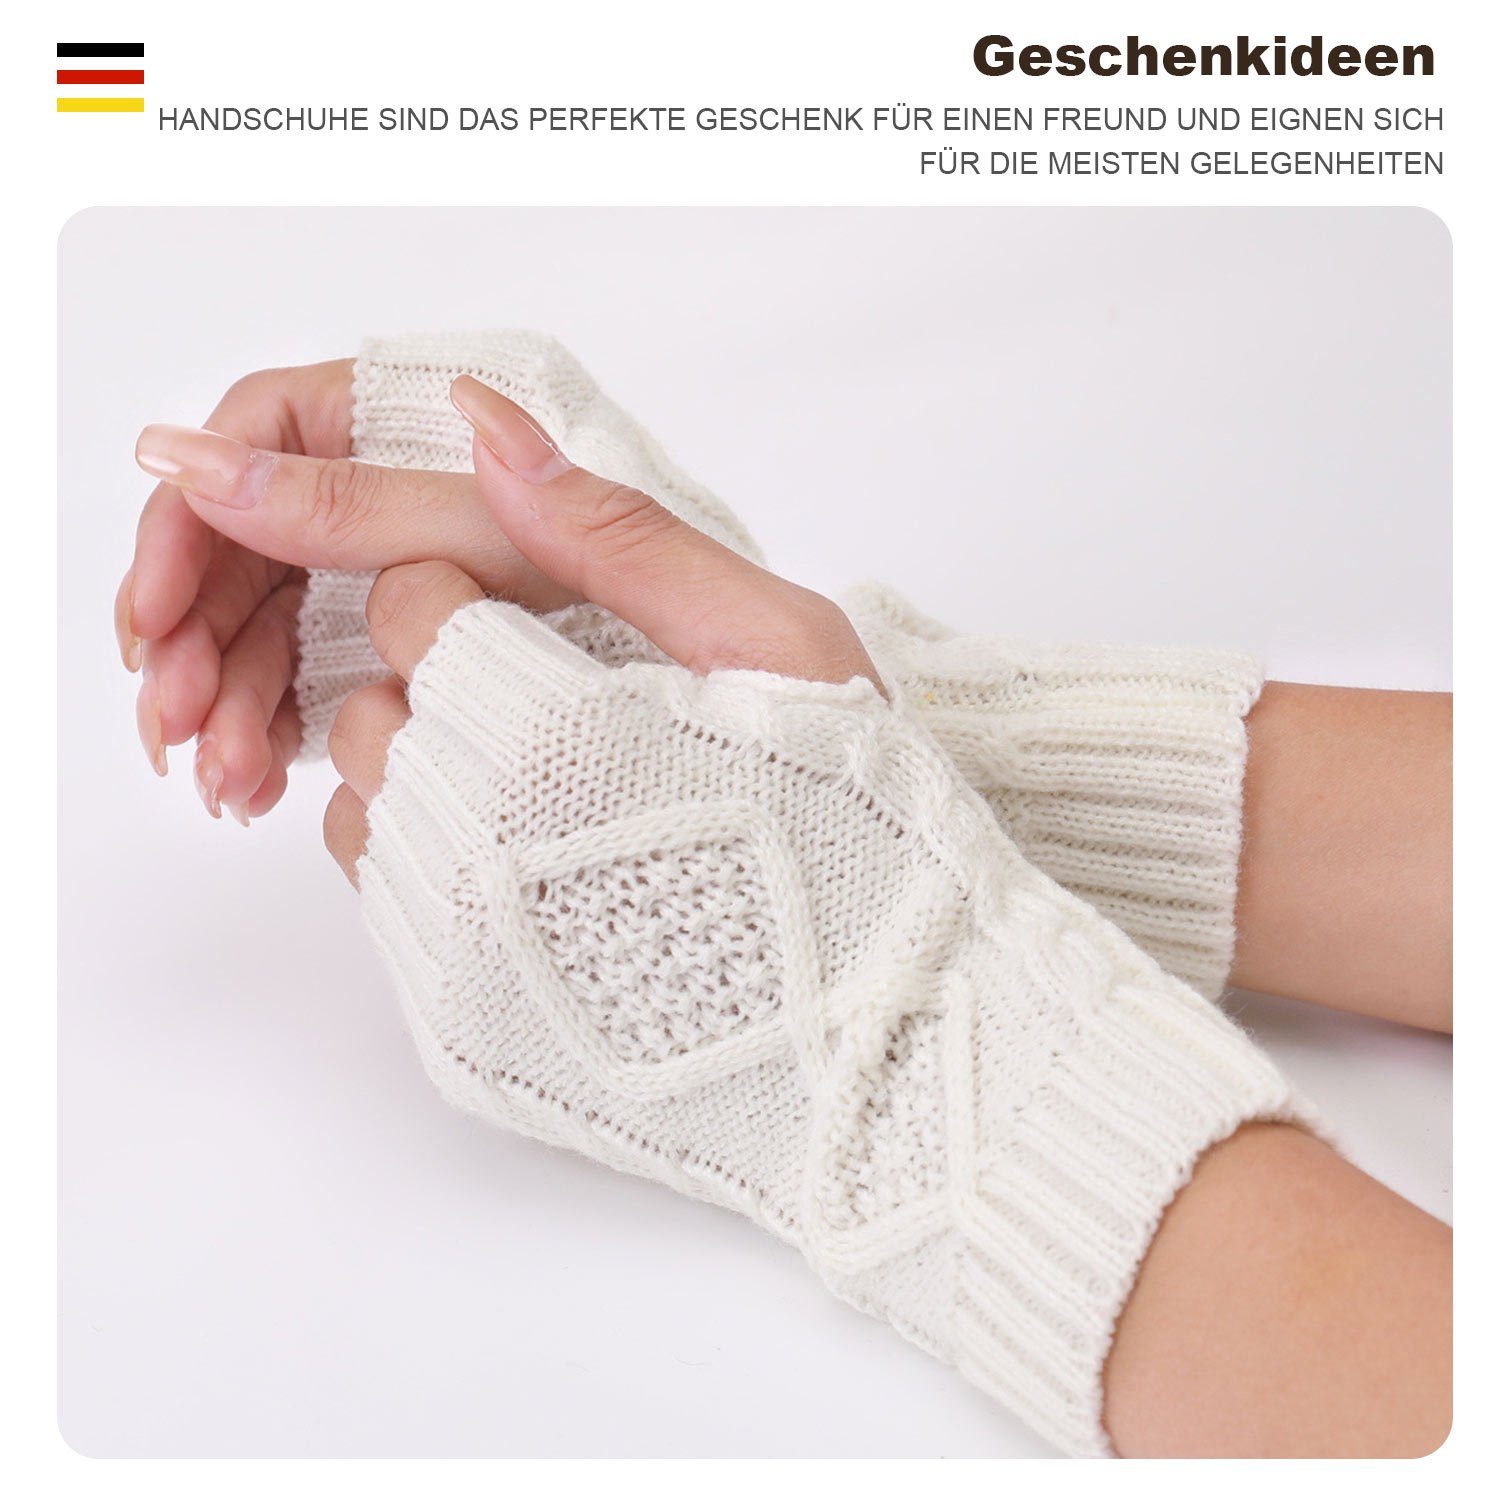 MAGICSHE Strickhandschuhe Wärmer Gestrickte Damen Winter Fingerlose Handschuhe Weiß